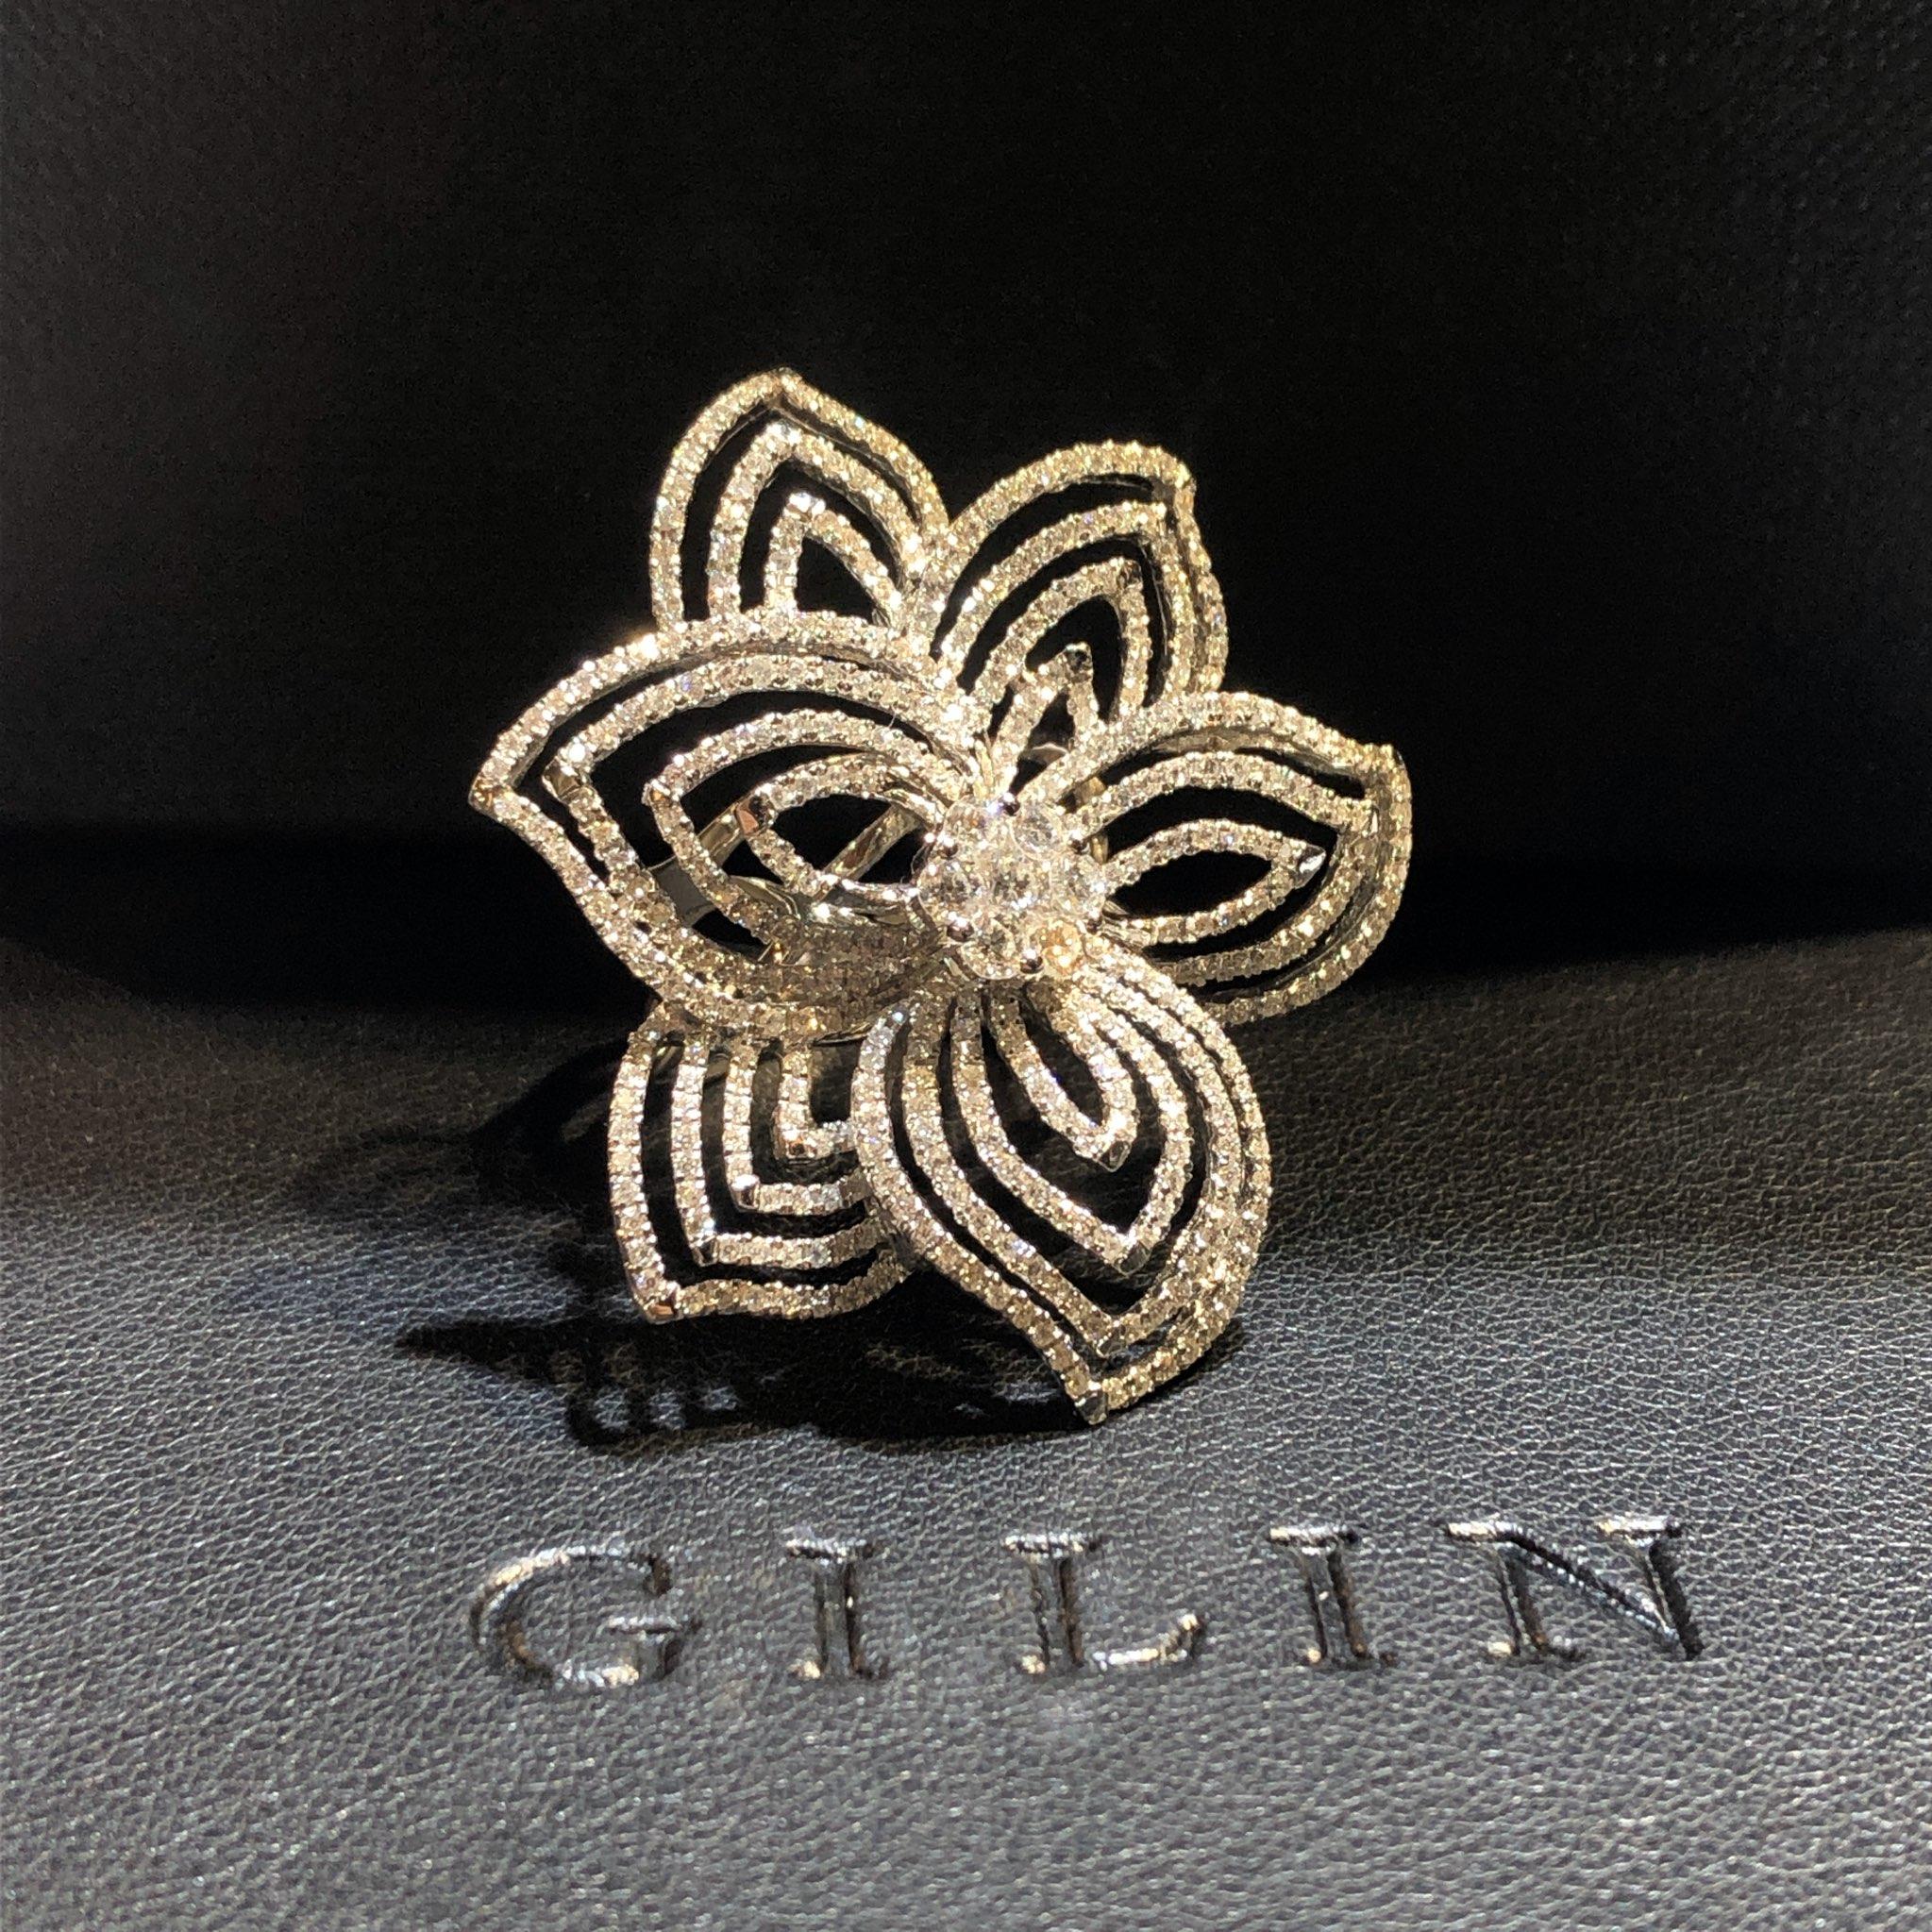 Women's GILIN 18K White Gold Diamond Ring For Sale